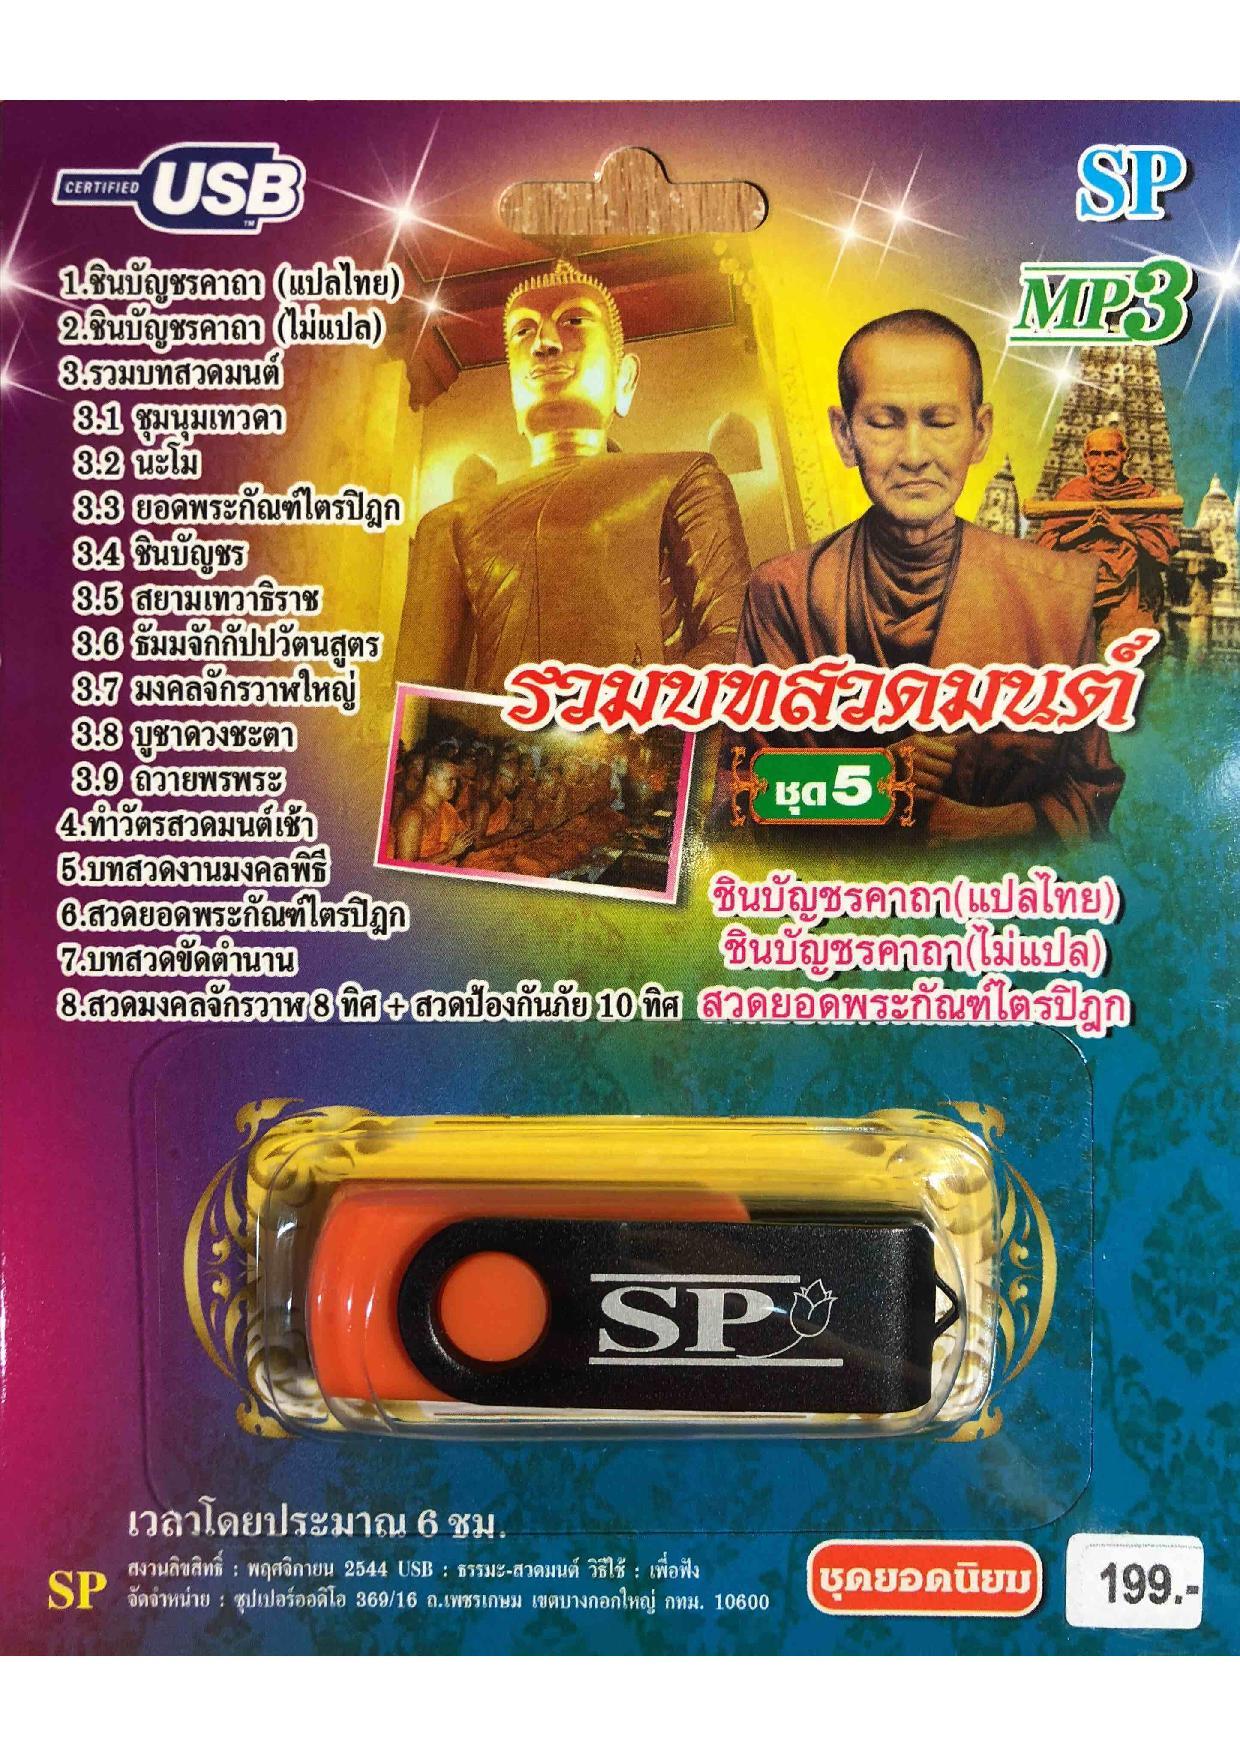 แฟลชไดร์ฟ Flash Drive เพลง MP3 รวมบทสวดมนต์ชุด 5